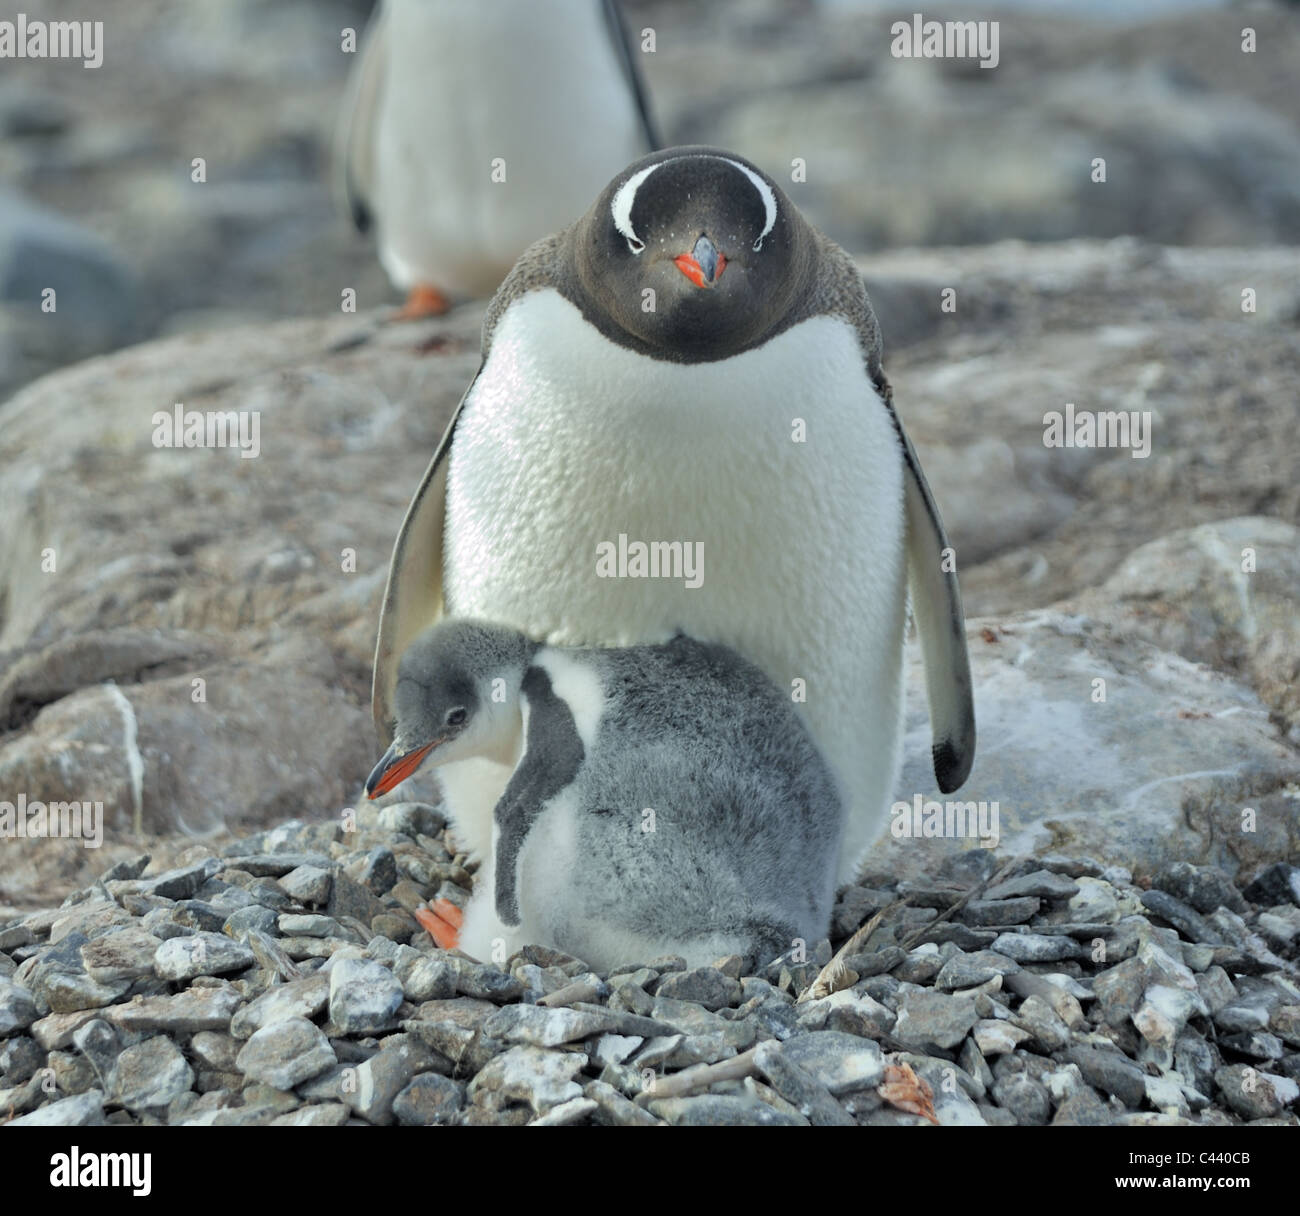 Pichones de pingüinos Gentoo con sus padres, en la Antártida. Foto de stock